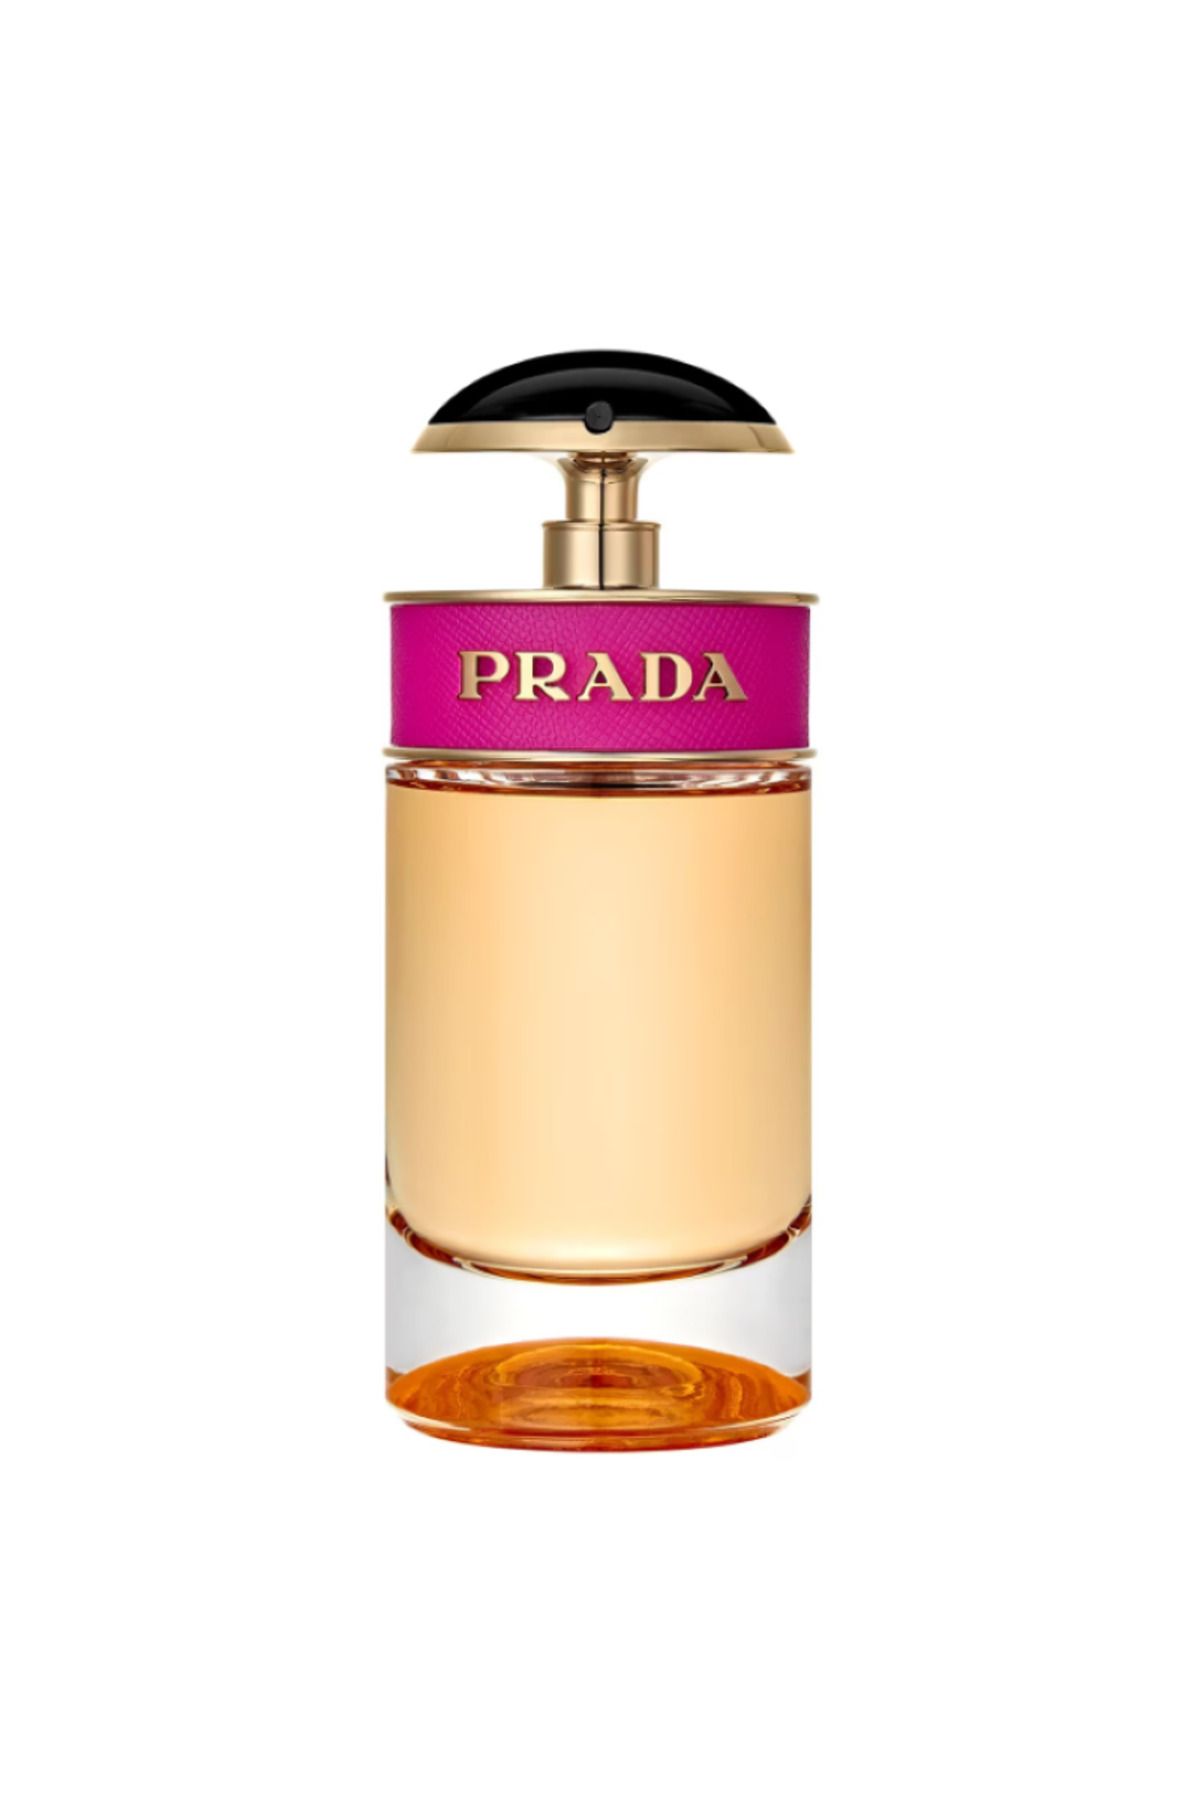 Prada Candy - Eau de Parfum Baştan Çıkarıcı, Arzulanan, Kışkırtıcı, Ateşli 80 ml